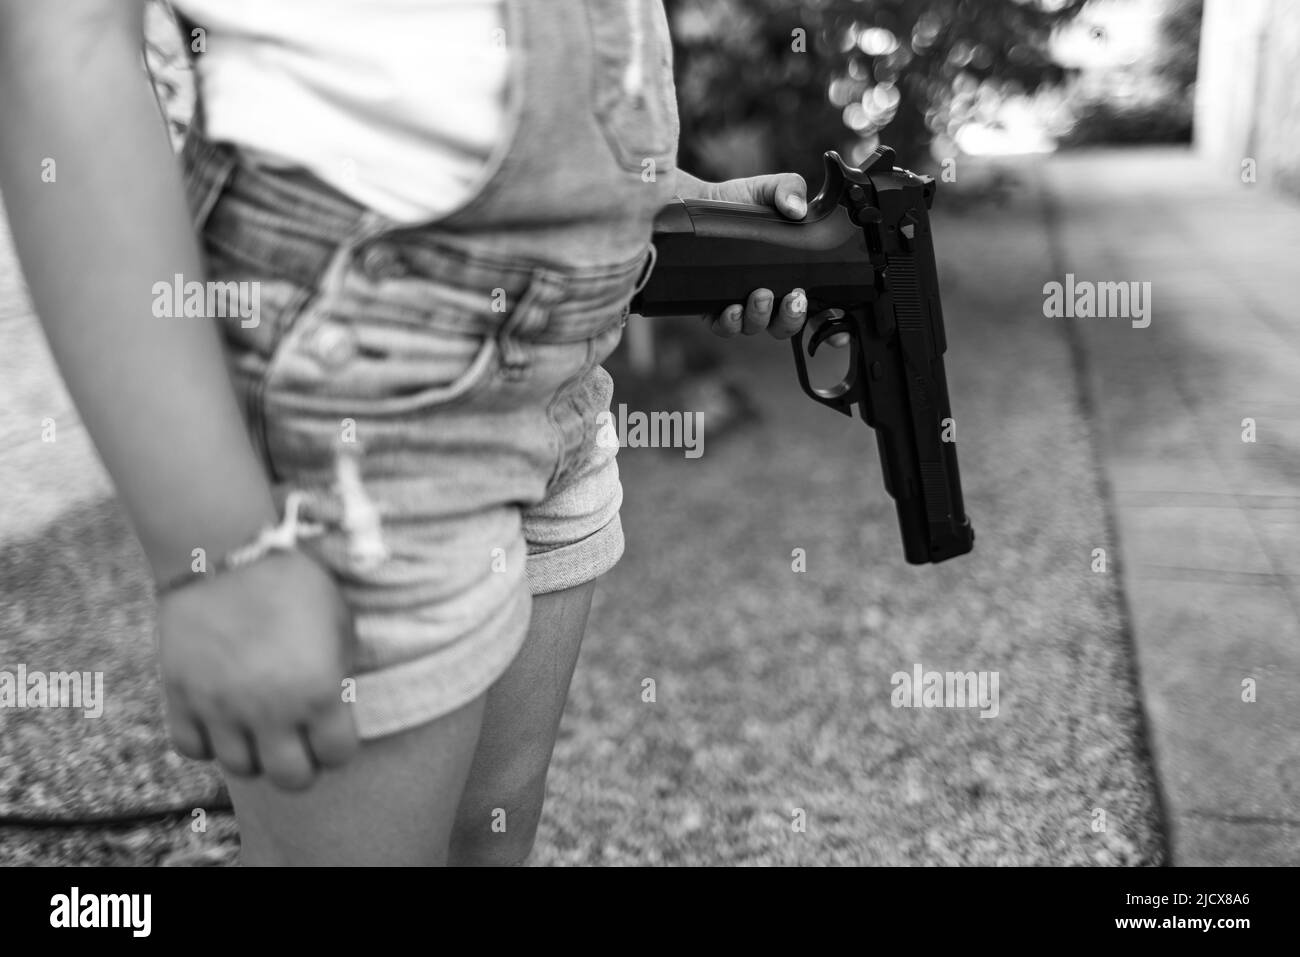 Schwarz-Weiß-Fotografie mit einem kleinen Mädchen, das eine Pistazie in der Hand hält und auf den Boden zeigt. Konzept der Gewalt, Waffen, Waffen, Kindheit, USA, Schießen Stockfoto